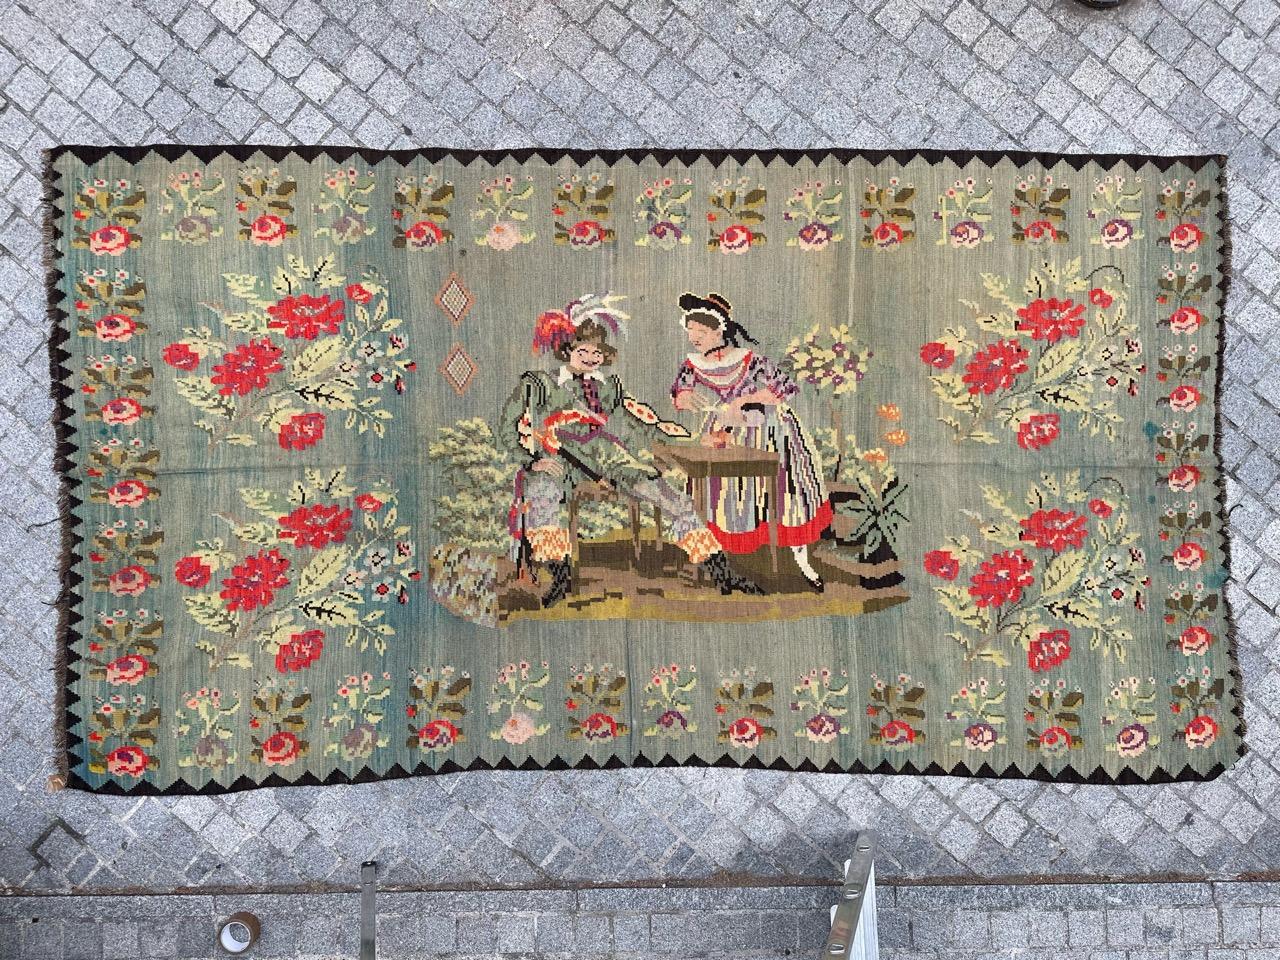 Wir präsentieren einen atemberaubenden Vintage-Wandteppich oder Kilim aus Karabagh: Ein wahres Meisterwerk der Handwerkskunst. Dieses exquisite Stück zeigt ein kompliziertes Design, das ein Paar inmitten von leuchtenden Blumen darstellt. Es wurde